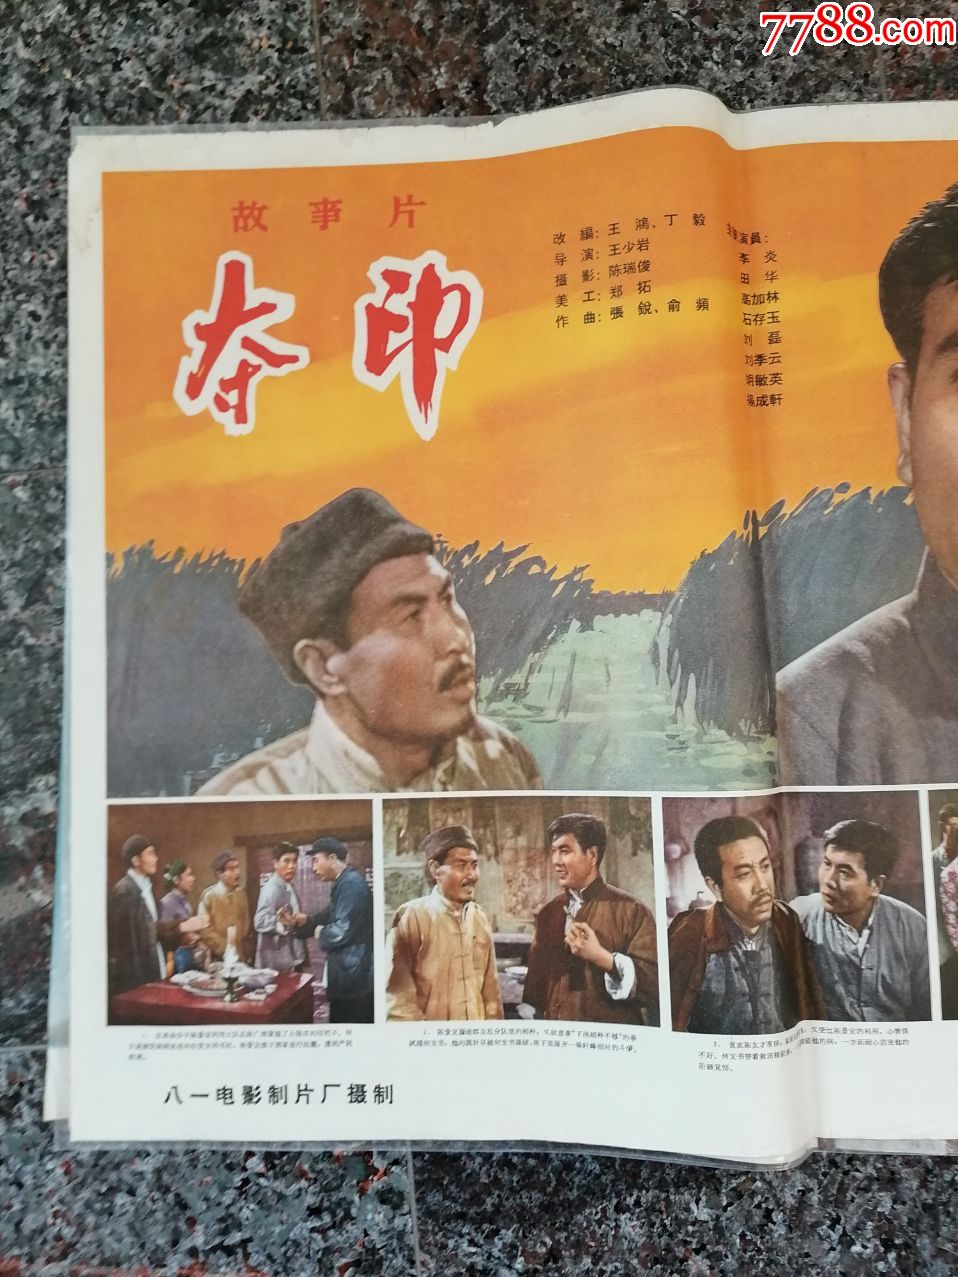 2157,夺印,1964年,八一电影制片厂,中国电影发行放映公司